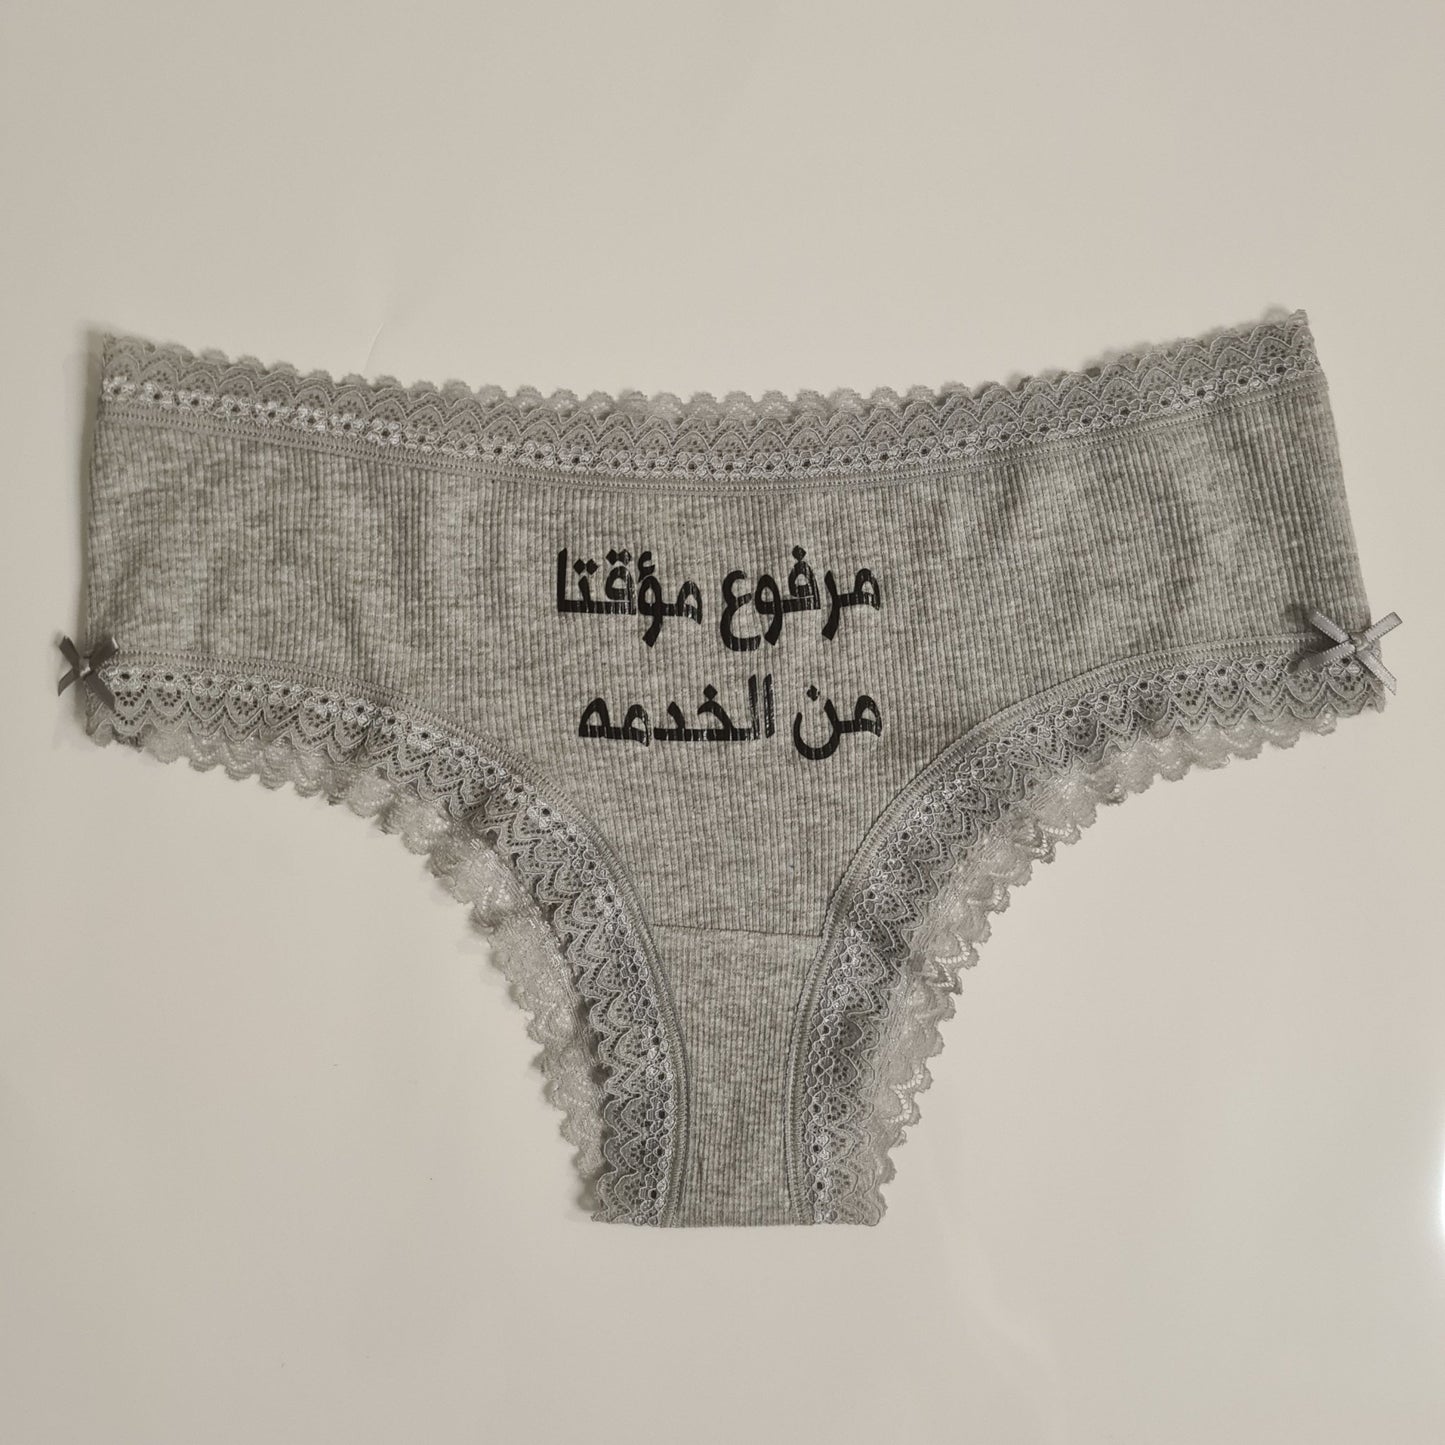 Women underwear - Out of Service - Etba3lly